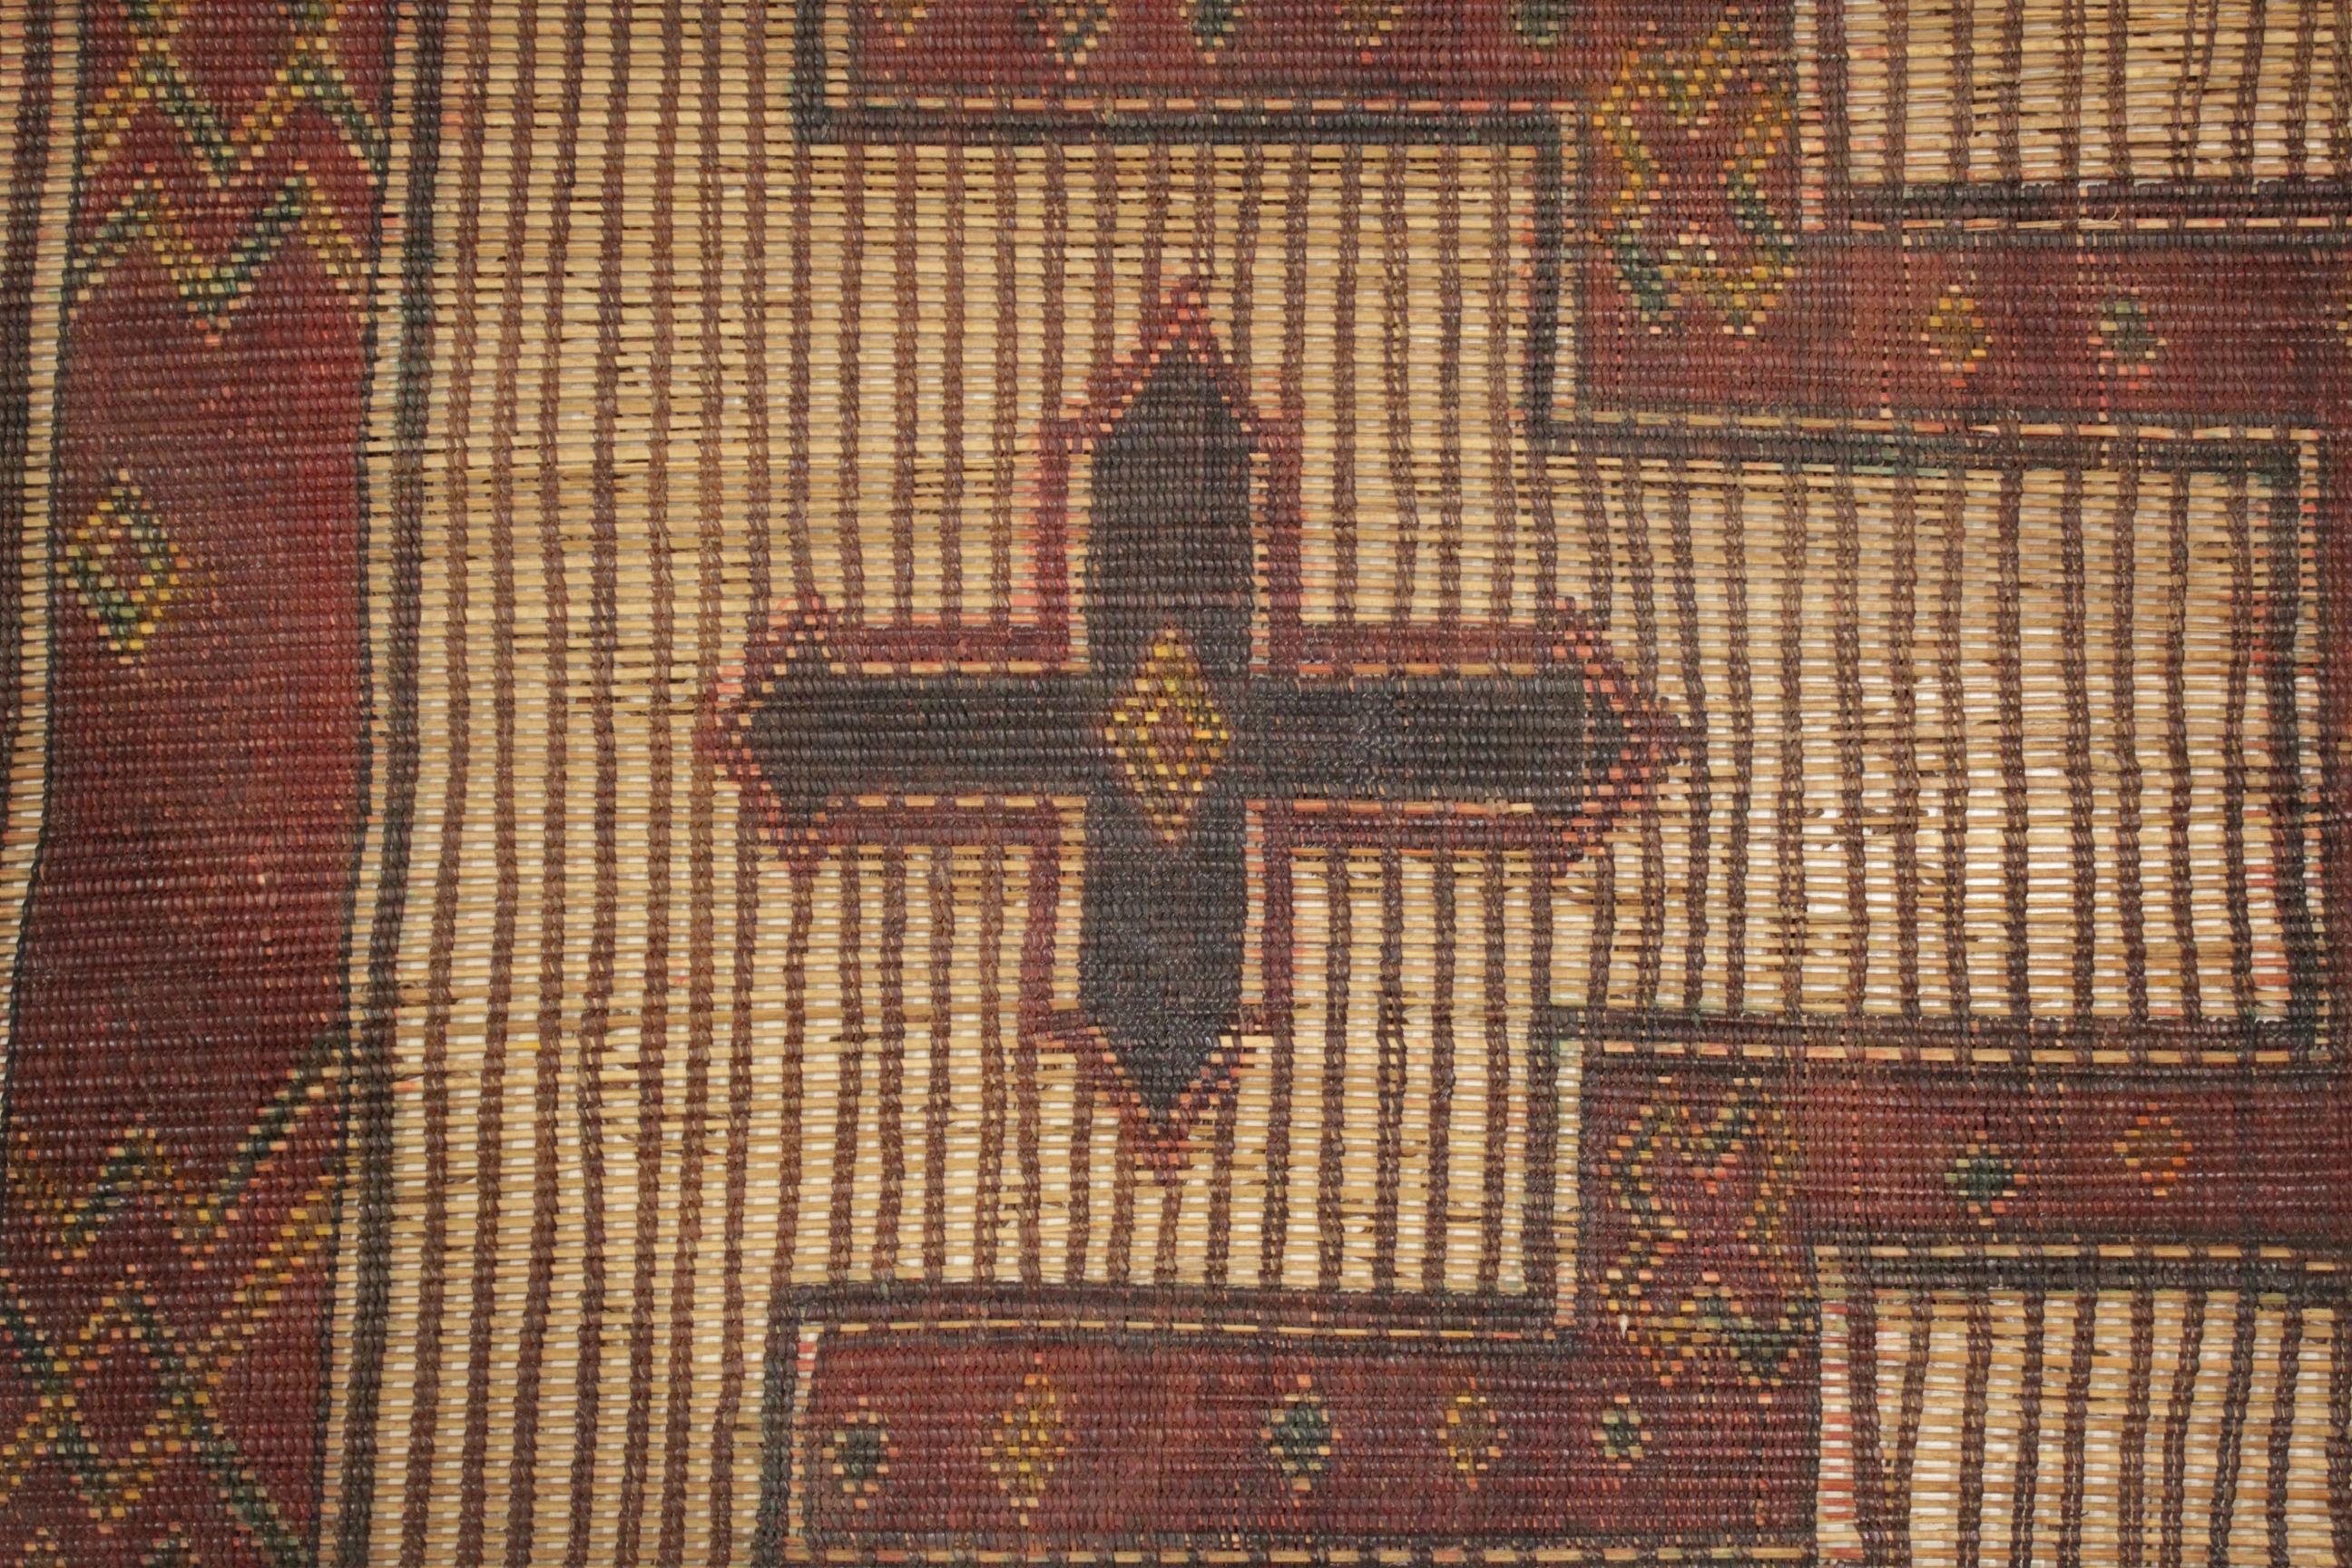 Les tapis des Touaregs, qui sont des nomades éleveurs de bétail habitant une vaste étendue du désert du Sahara, font partie du groupe de tissages le plus passionnant à apparaître sur le marché. Ils sont tissés en reliant de fins roseaux de paille